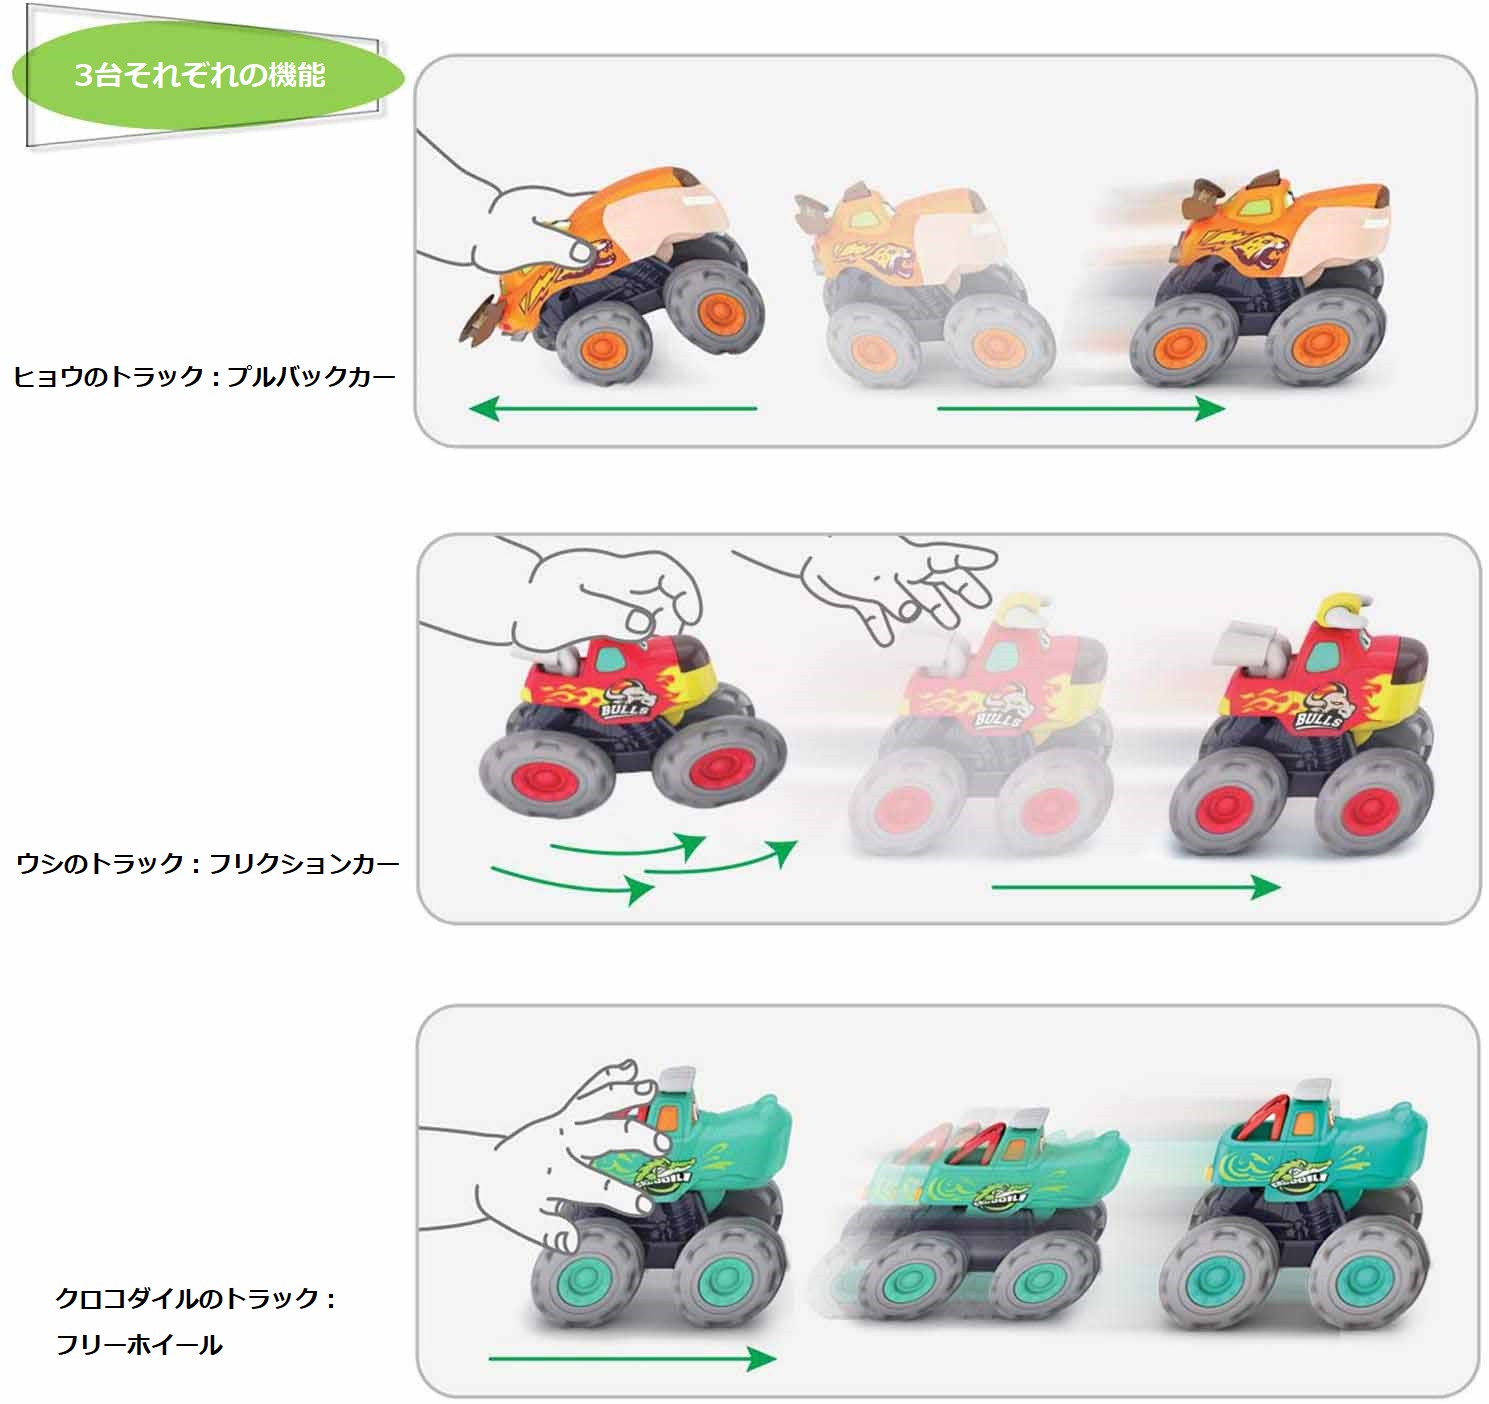 Esperanza(エスペランサ) 車 おもちゃ ミニカー 1歳 2歳 3歳 赤ちゃん フリクションカー プルバックカー